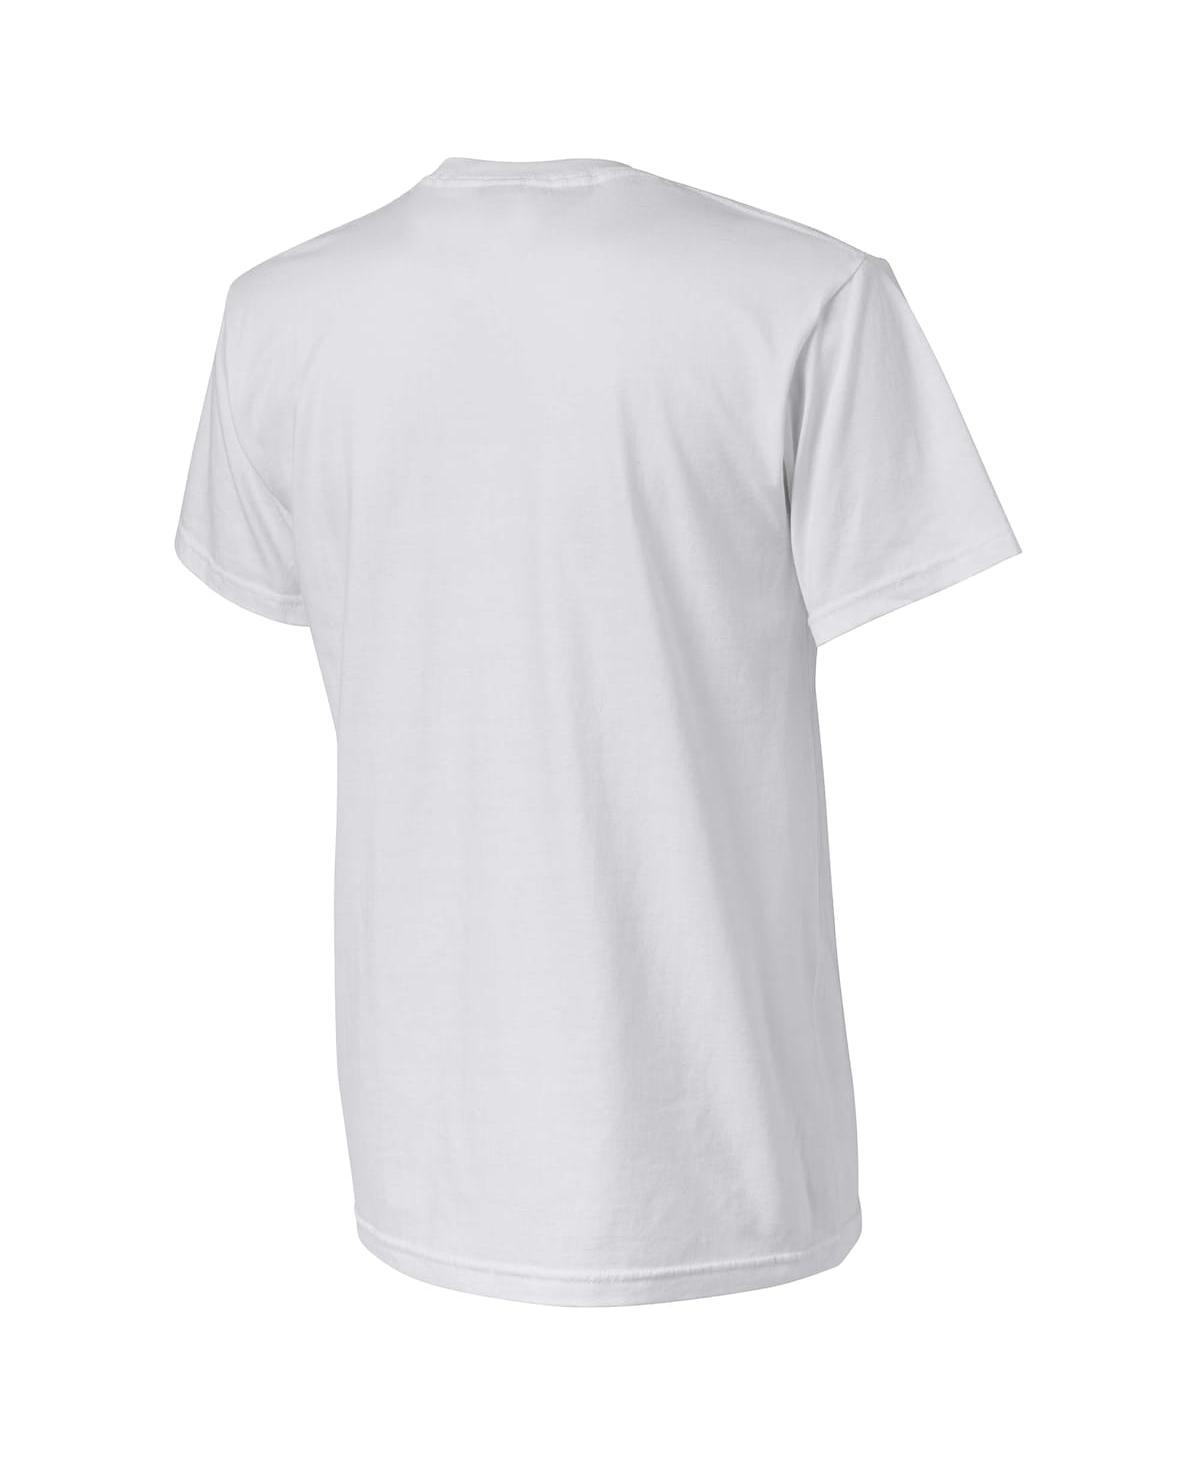 Shop Nba Exclusive Collection Men's Nba X Naturel White Washington Wizards No Caller Id T-shirt